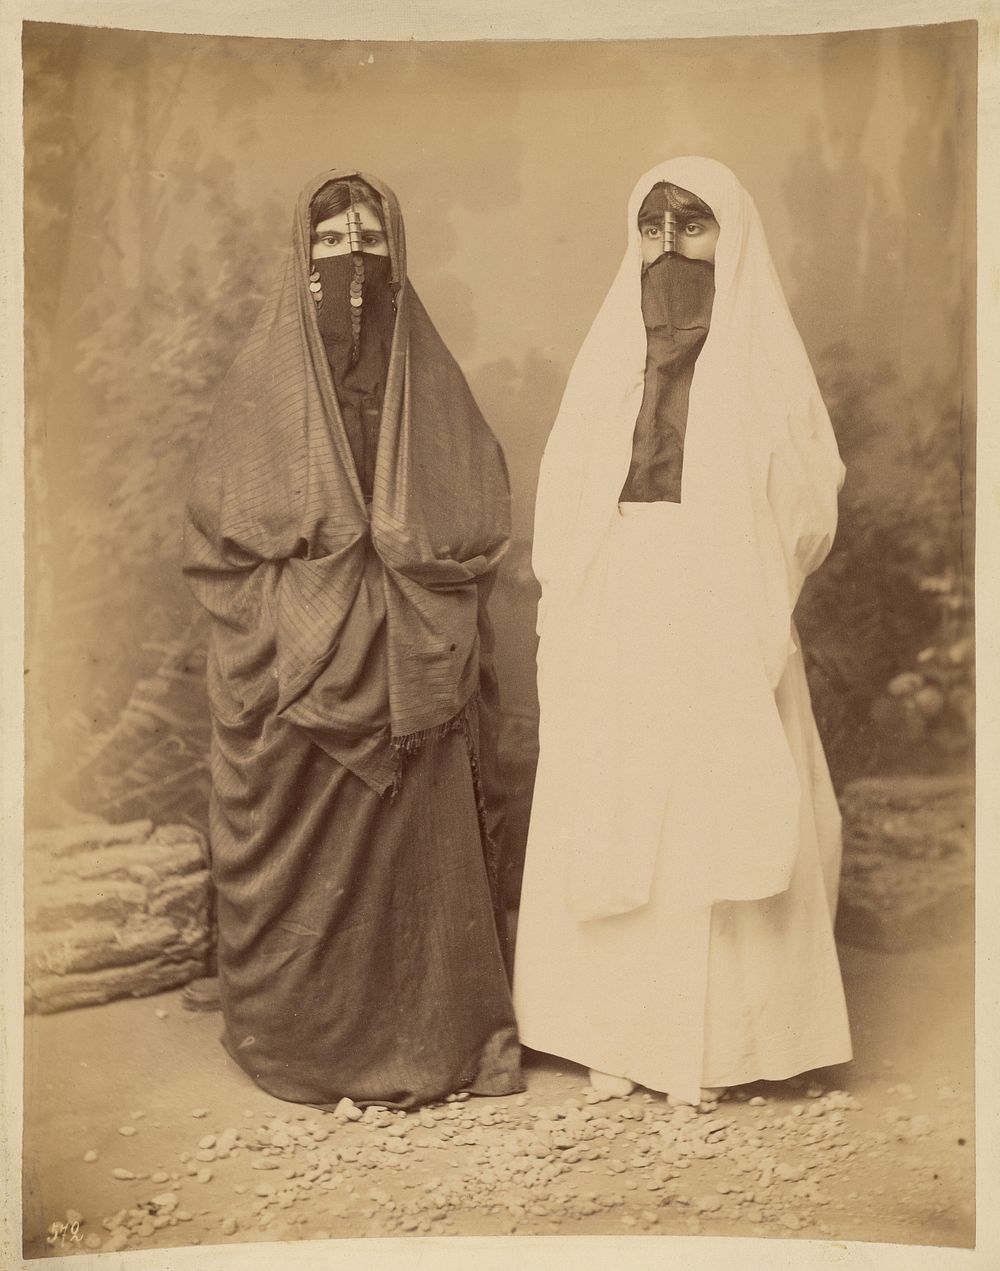 Portrait of Two Women in Middle Eastern Dress by Félix Bonfils